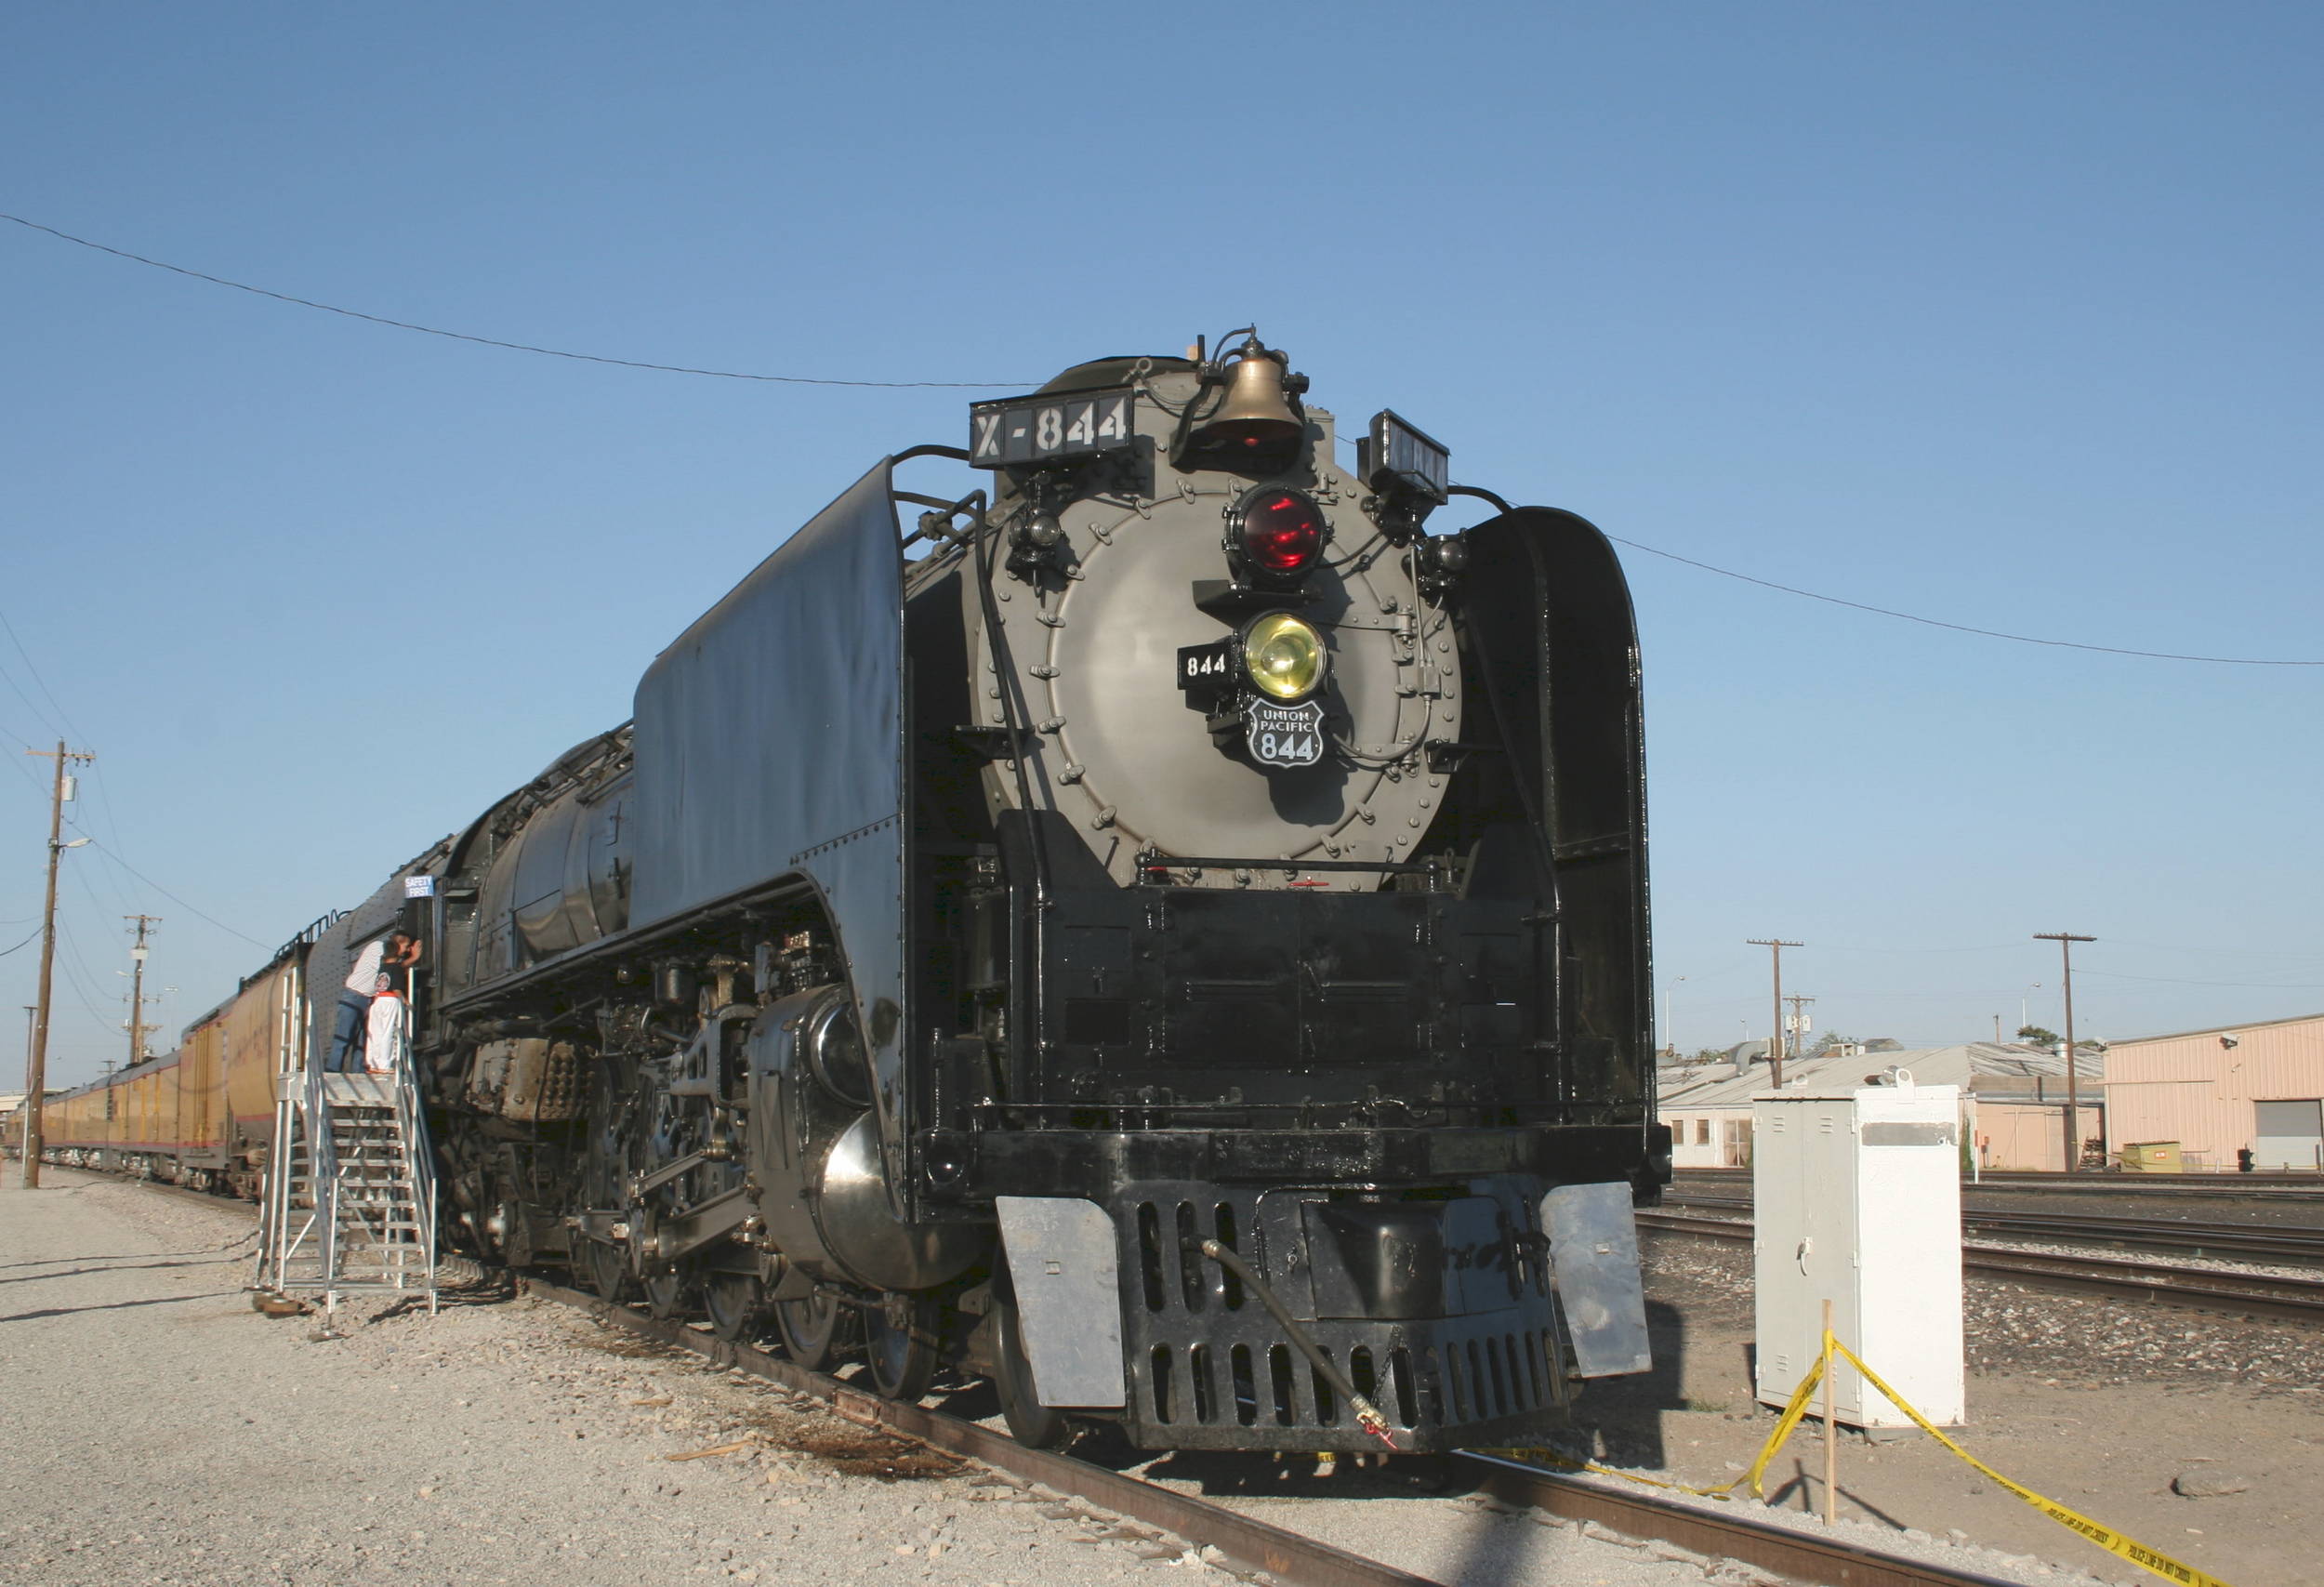 844 on display in El Paso, Texas